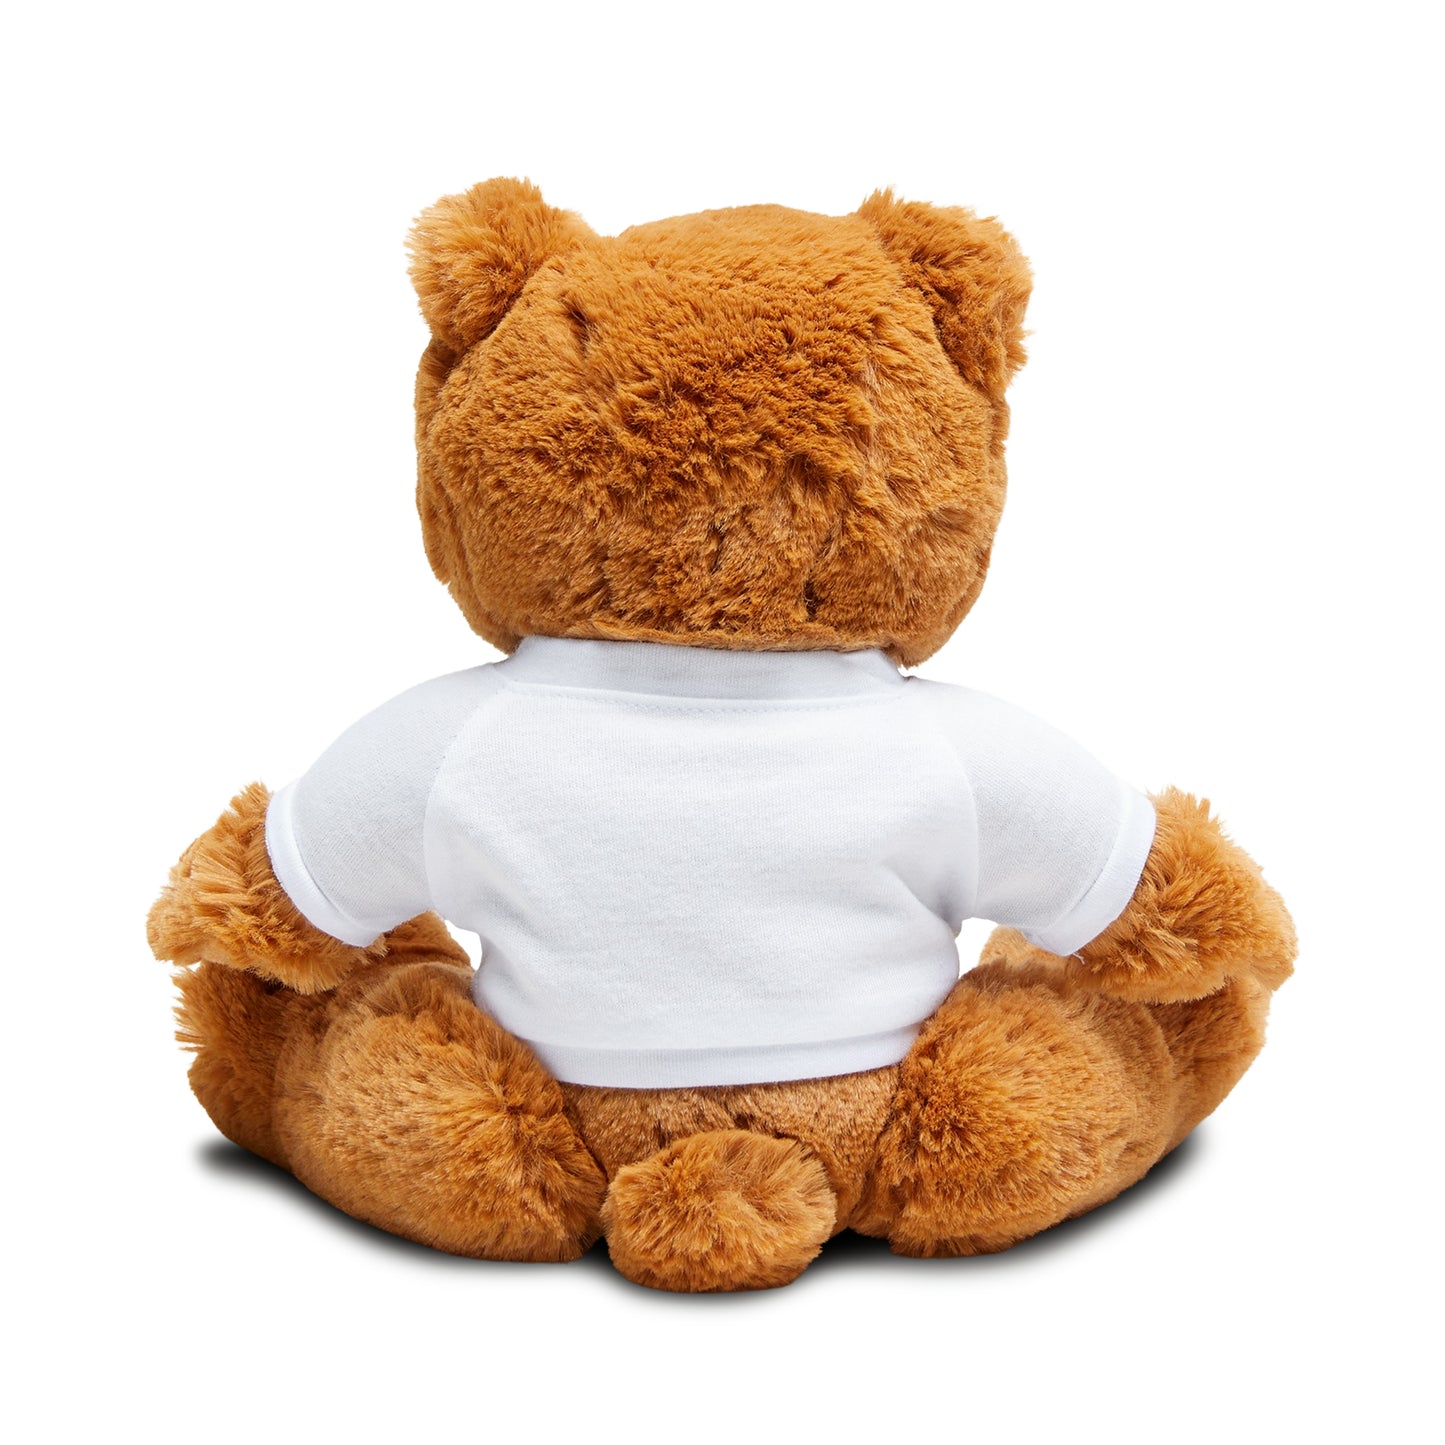 Bully-Proof Team No Sleep Teddy Bear with T-Shirt